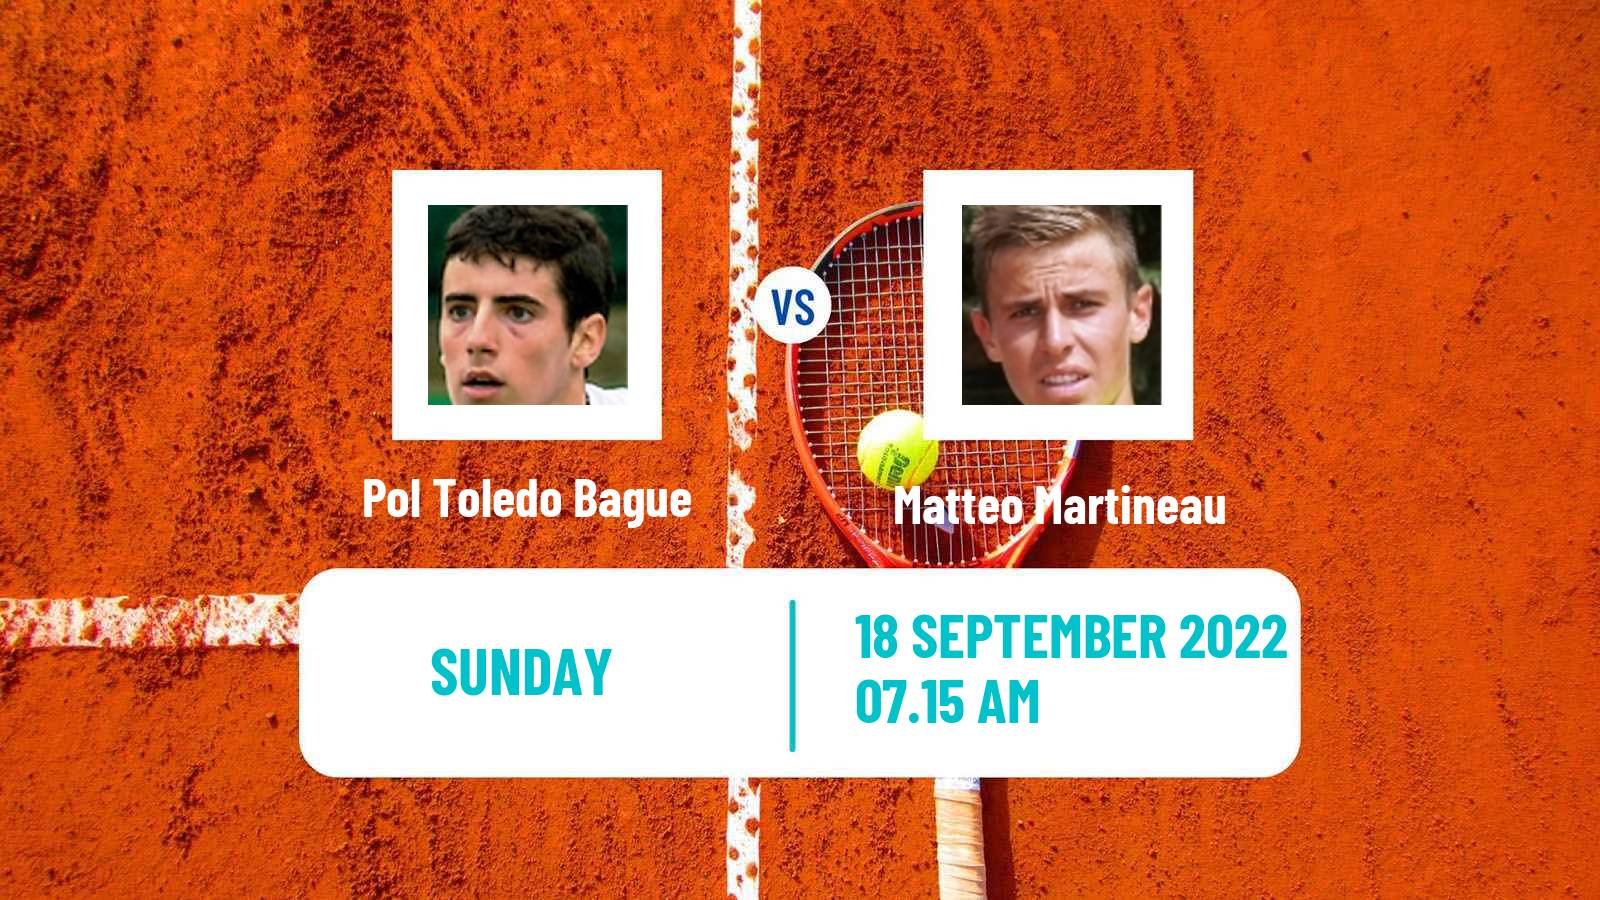 Tennis ATP Challenger Pol Toledo Bague - Matteo Martineau